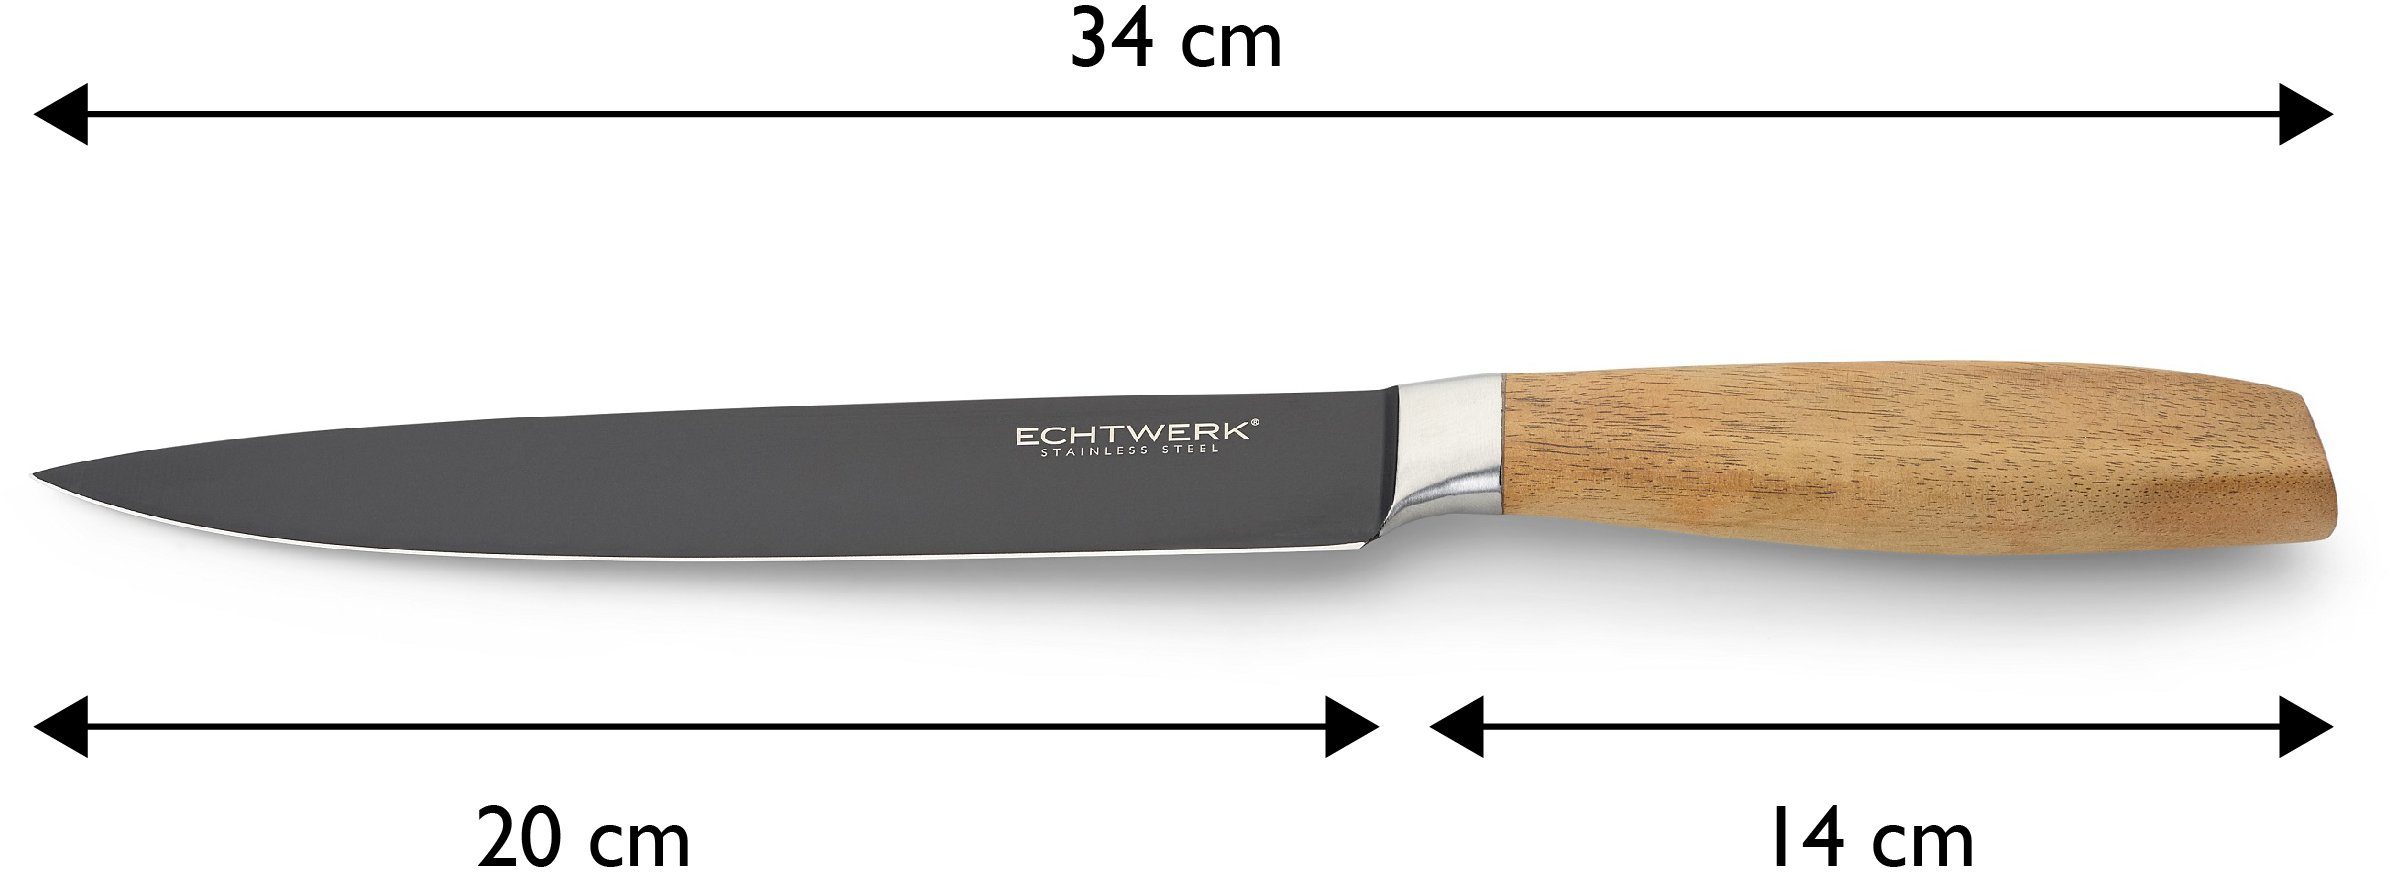 ECHTWERK Akazienholzgriff, Classic, aus Black-Edition, 20 hochwertigem Stahl, cm Fleischmesser